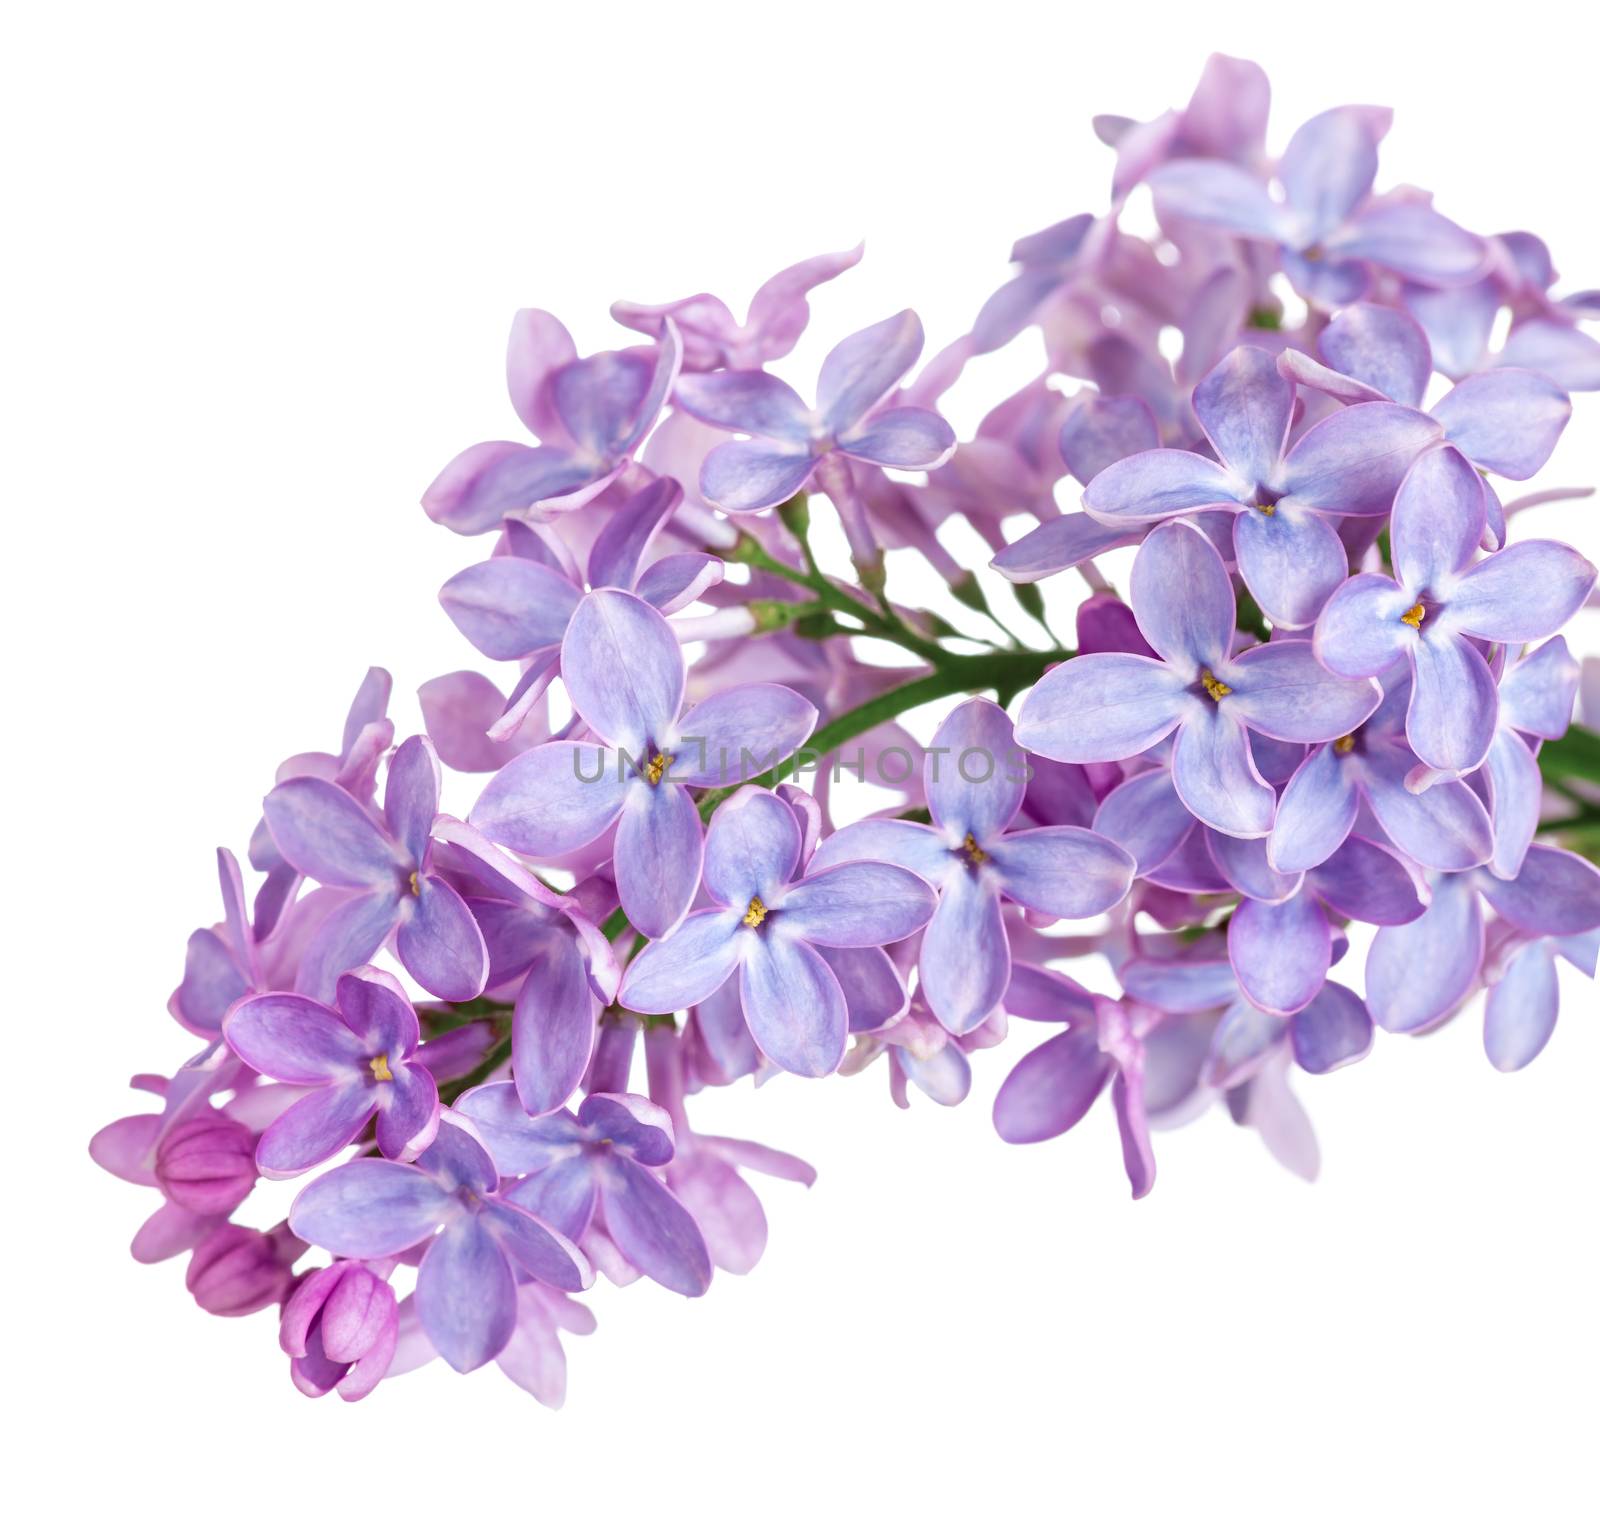 Lilac flower isolated on white background. Syringa vulgaris 